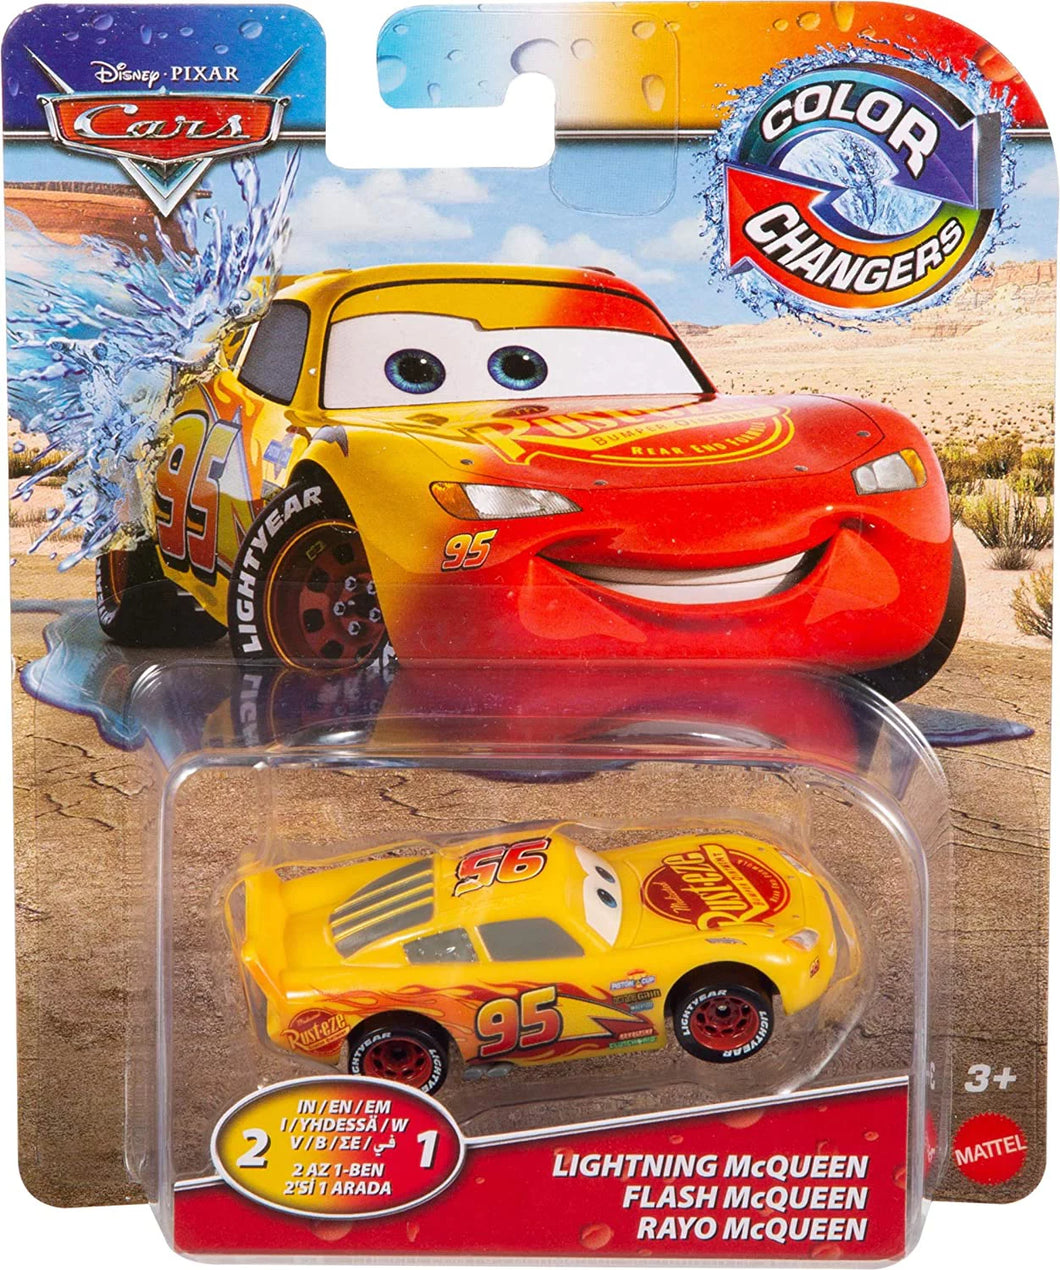 Disney Cars Pixar Color Changers Lightning McQueen